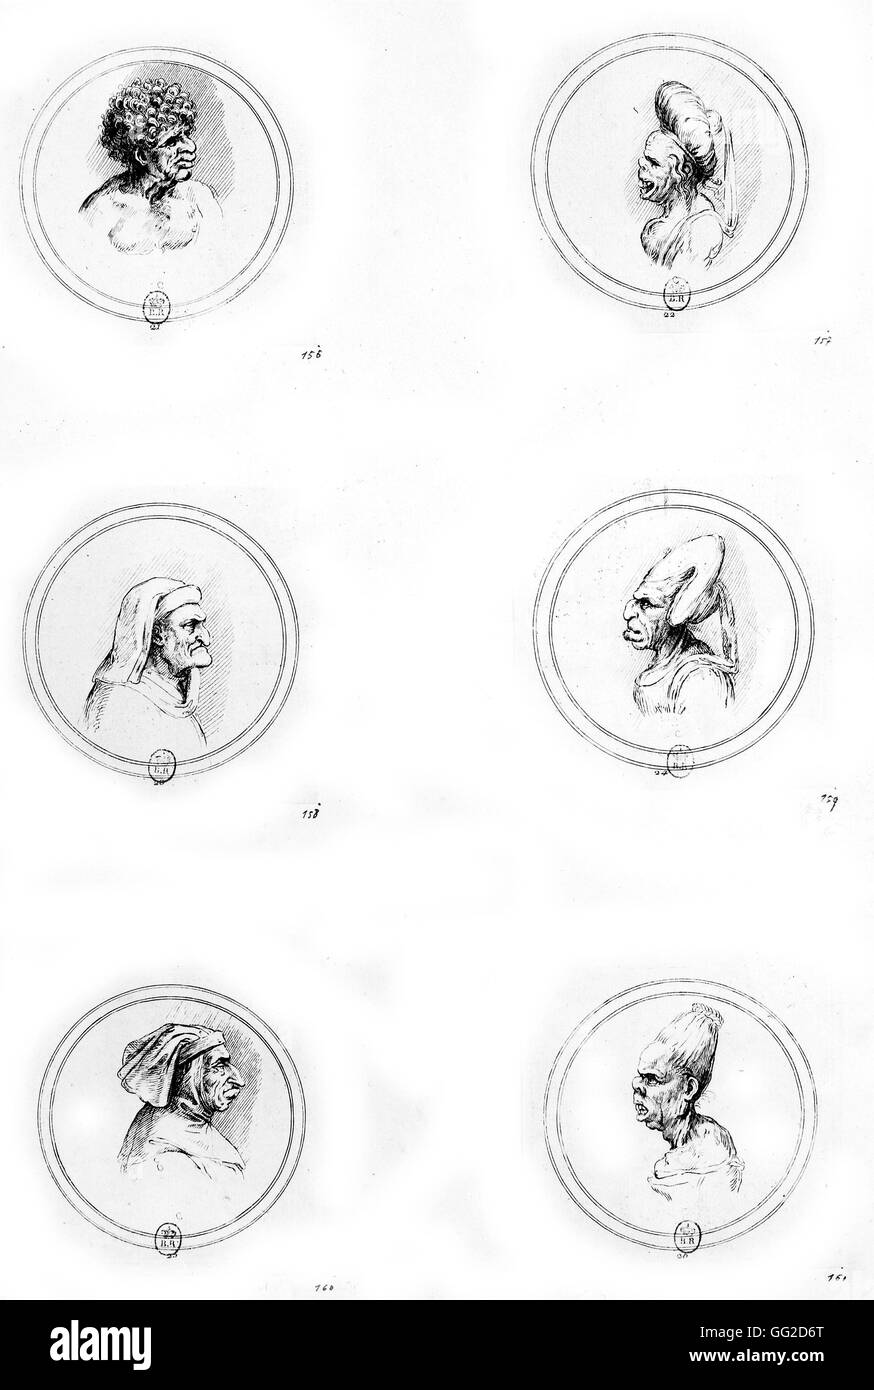 Leonardo da Vinci Italienischschule A grotesken Kopf 1502 Kreidezeichnung veröffentlicht in "Skizzen und Studien der groteske Köpfe". Die Originalzeichnung befindet sich in der königlichen Bibliothek auf Schloss Windsor. Oxford, Bodleian Library Stockfoto